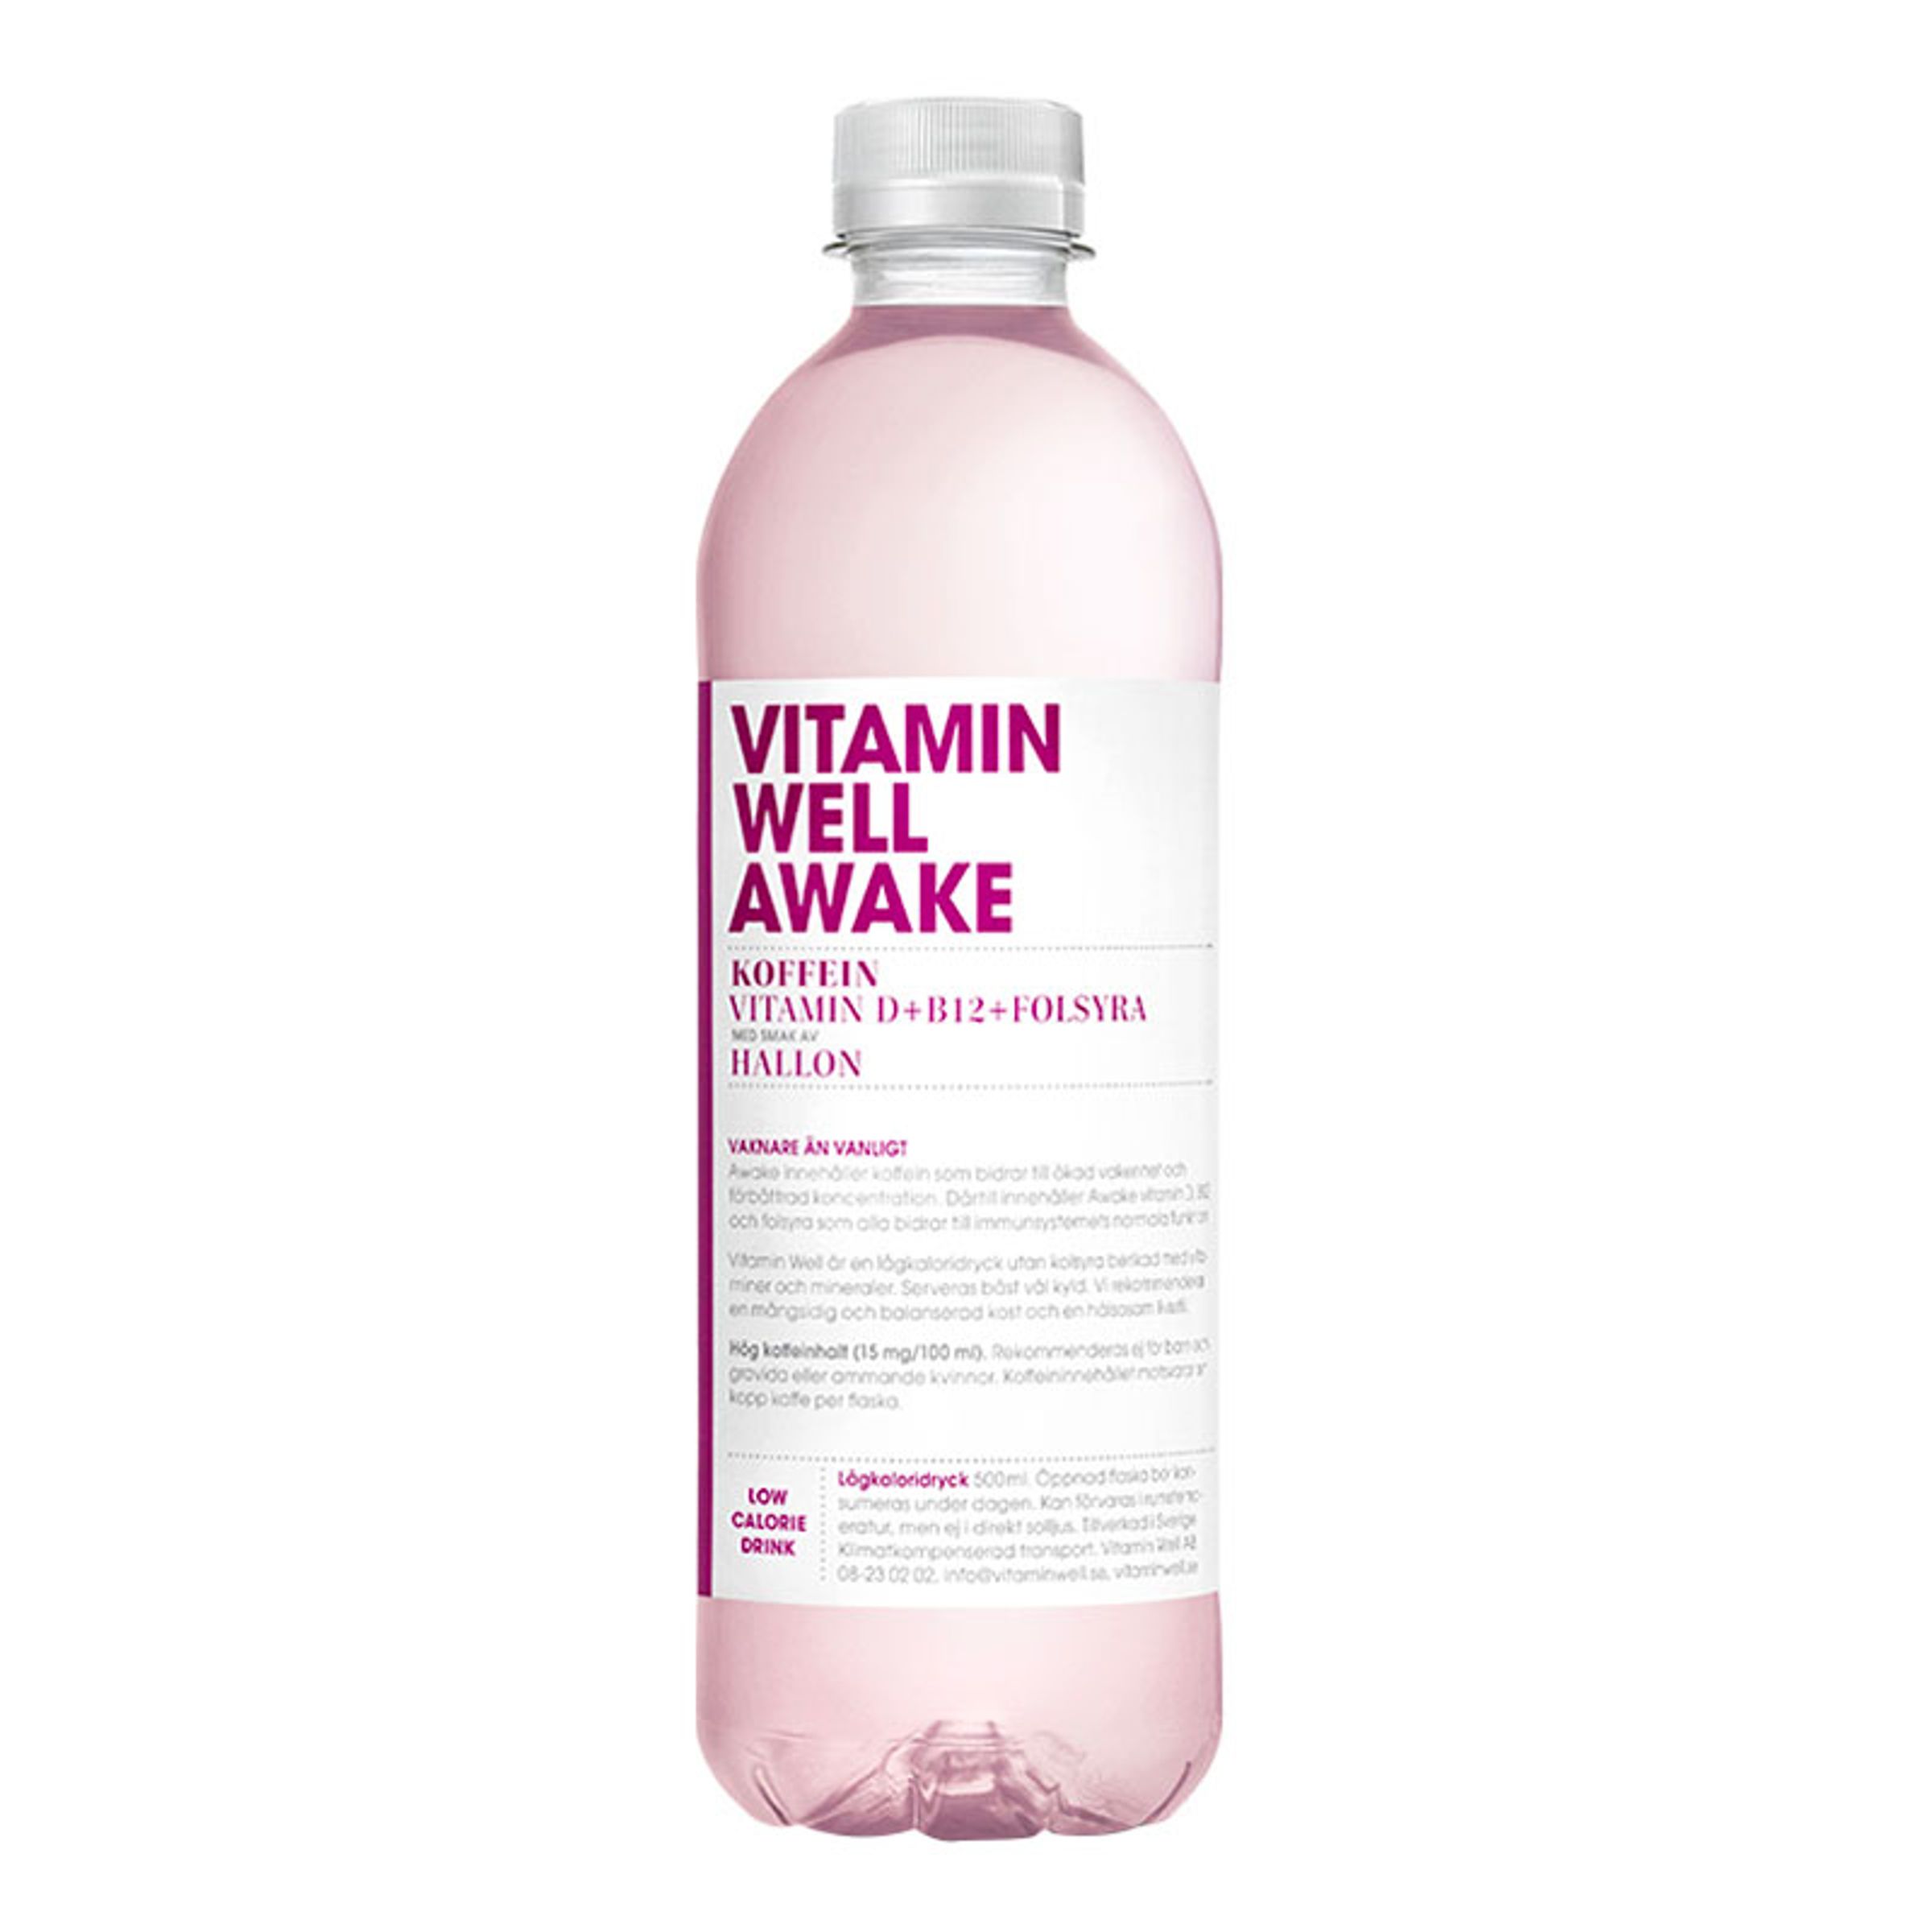 Vitamin Well Awake Hallon